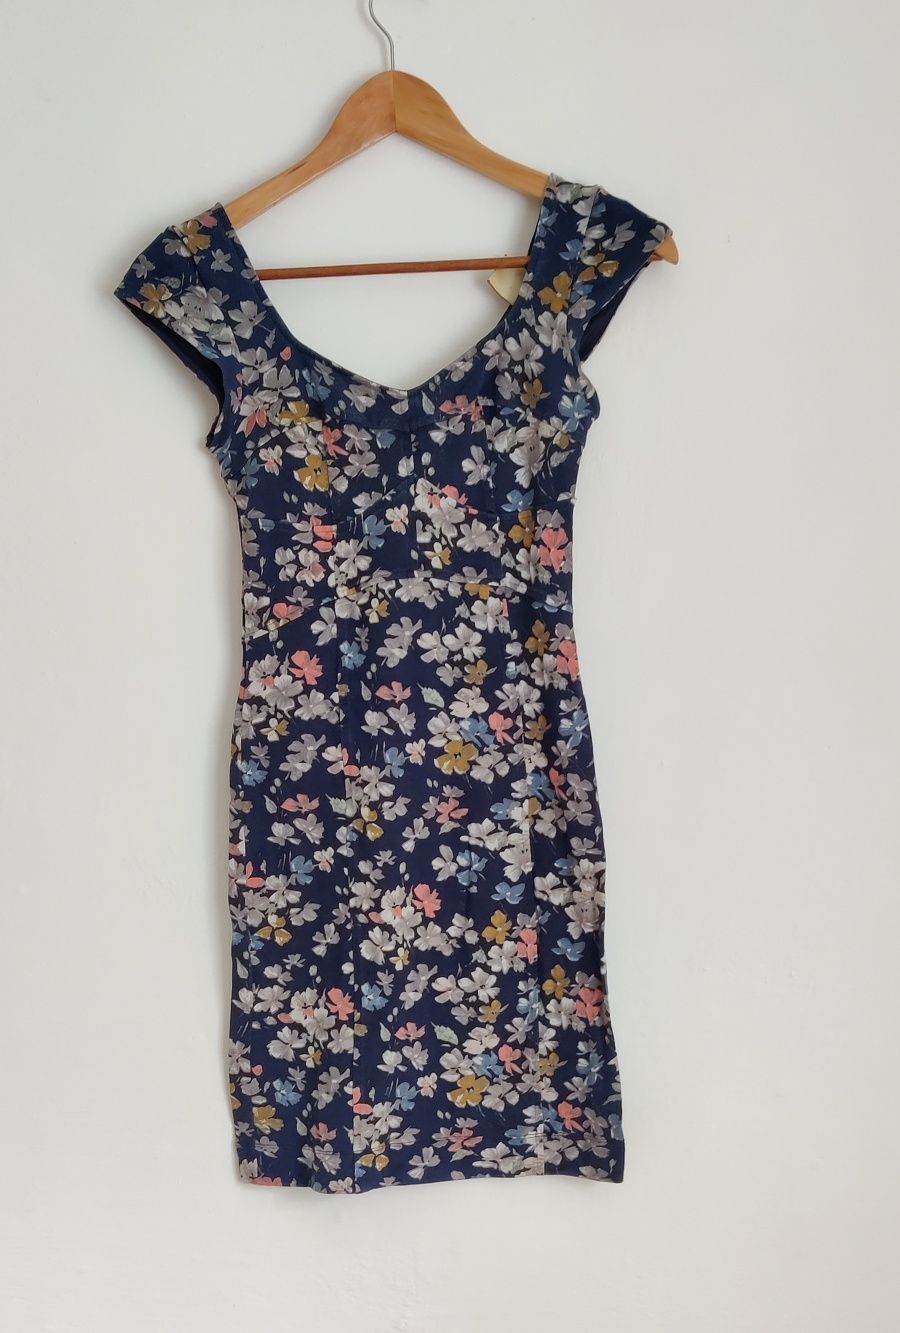 Sukienka krótka bawełniana elastyczna w kwiaty granatowa 34-36